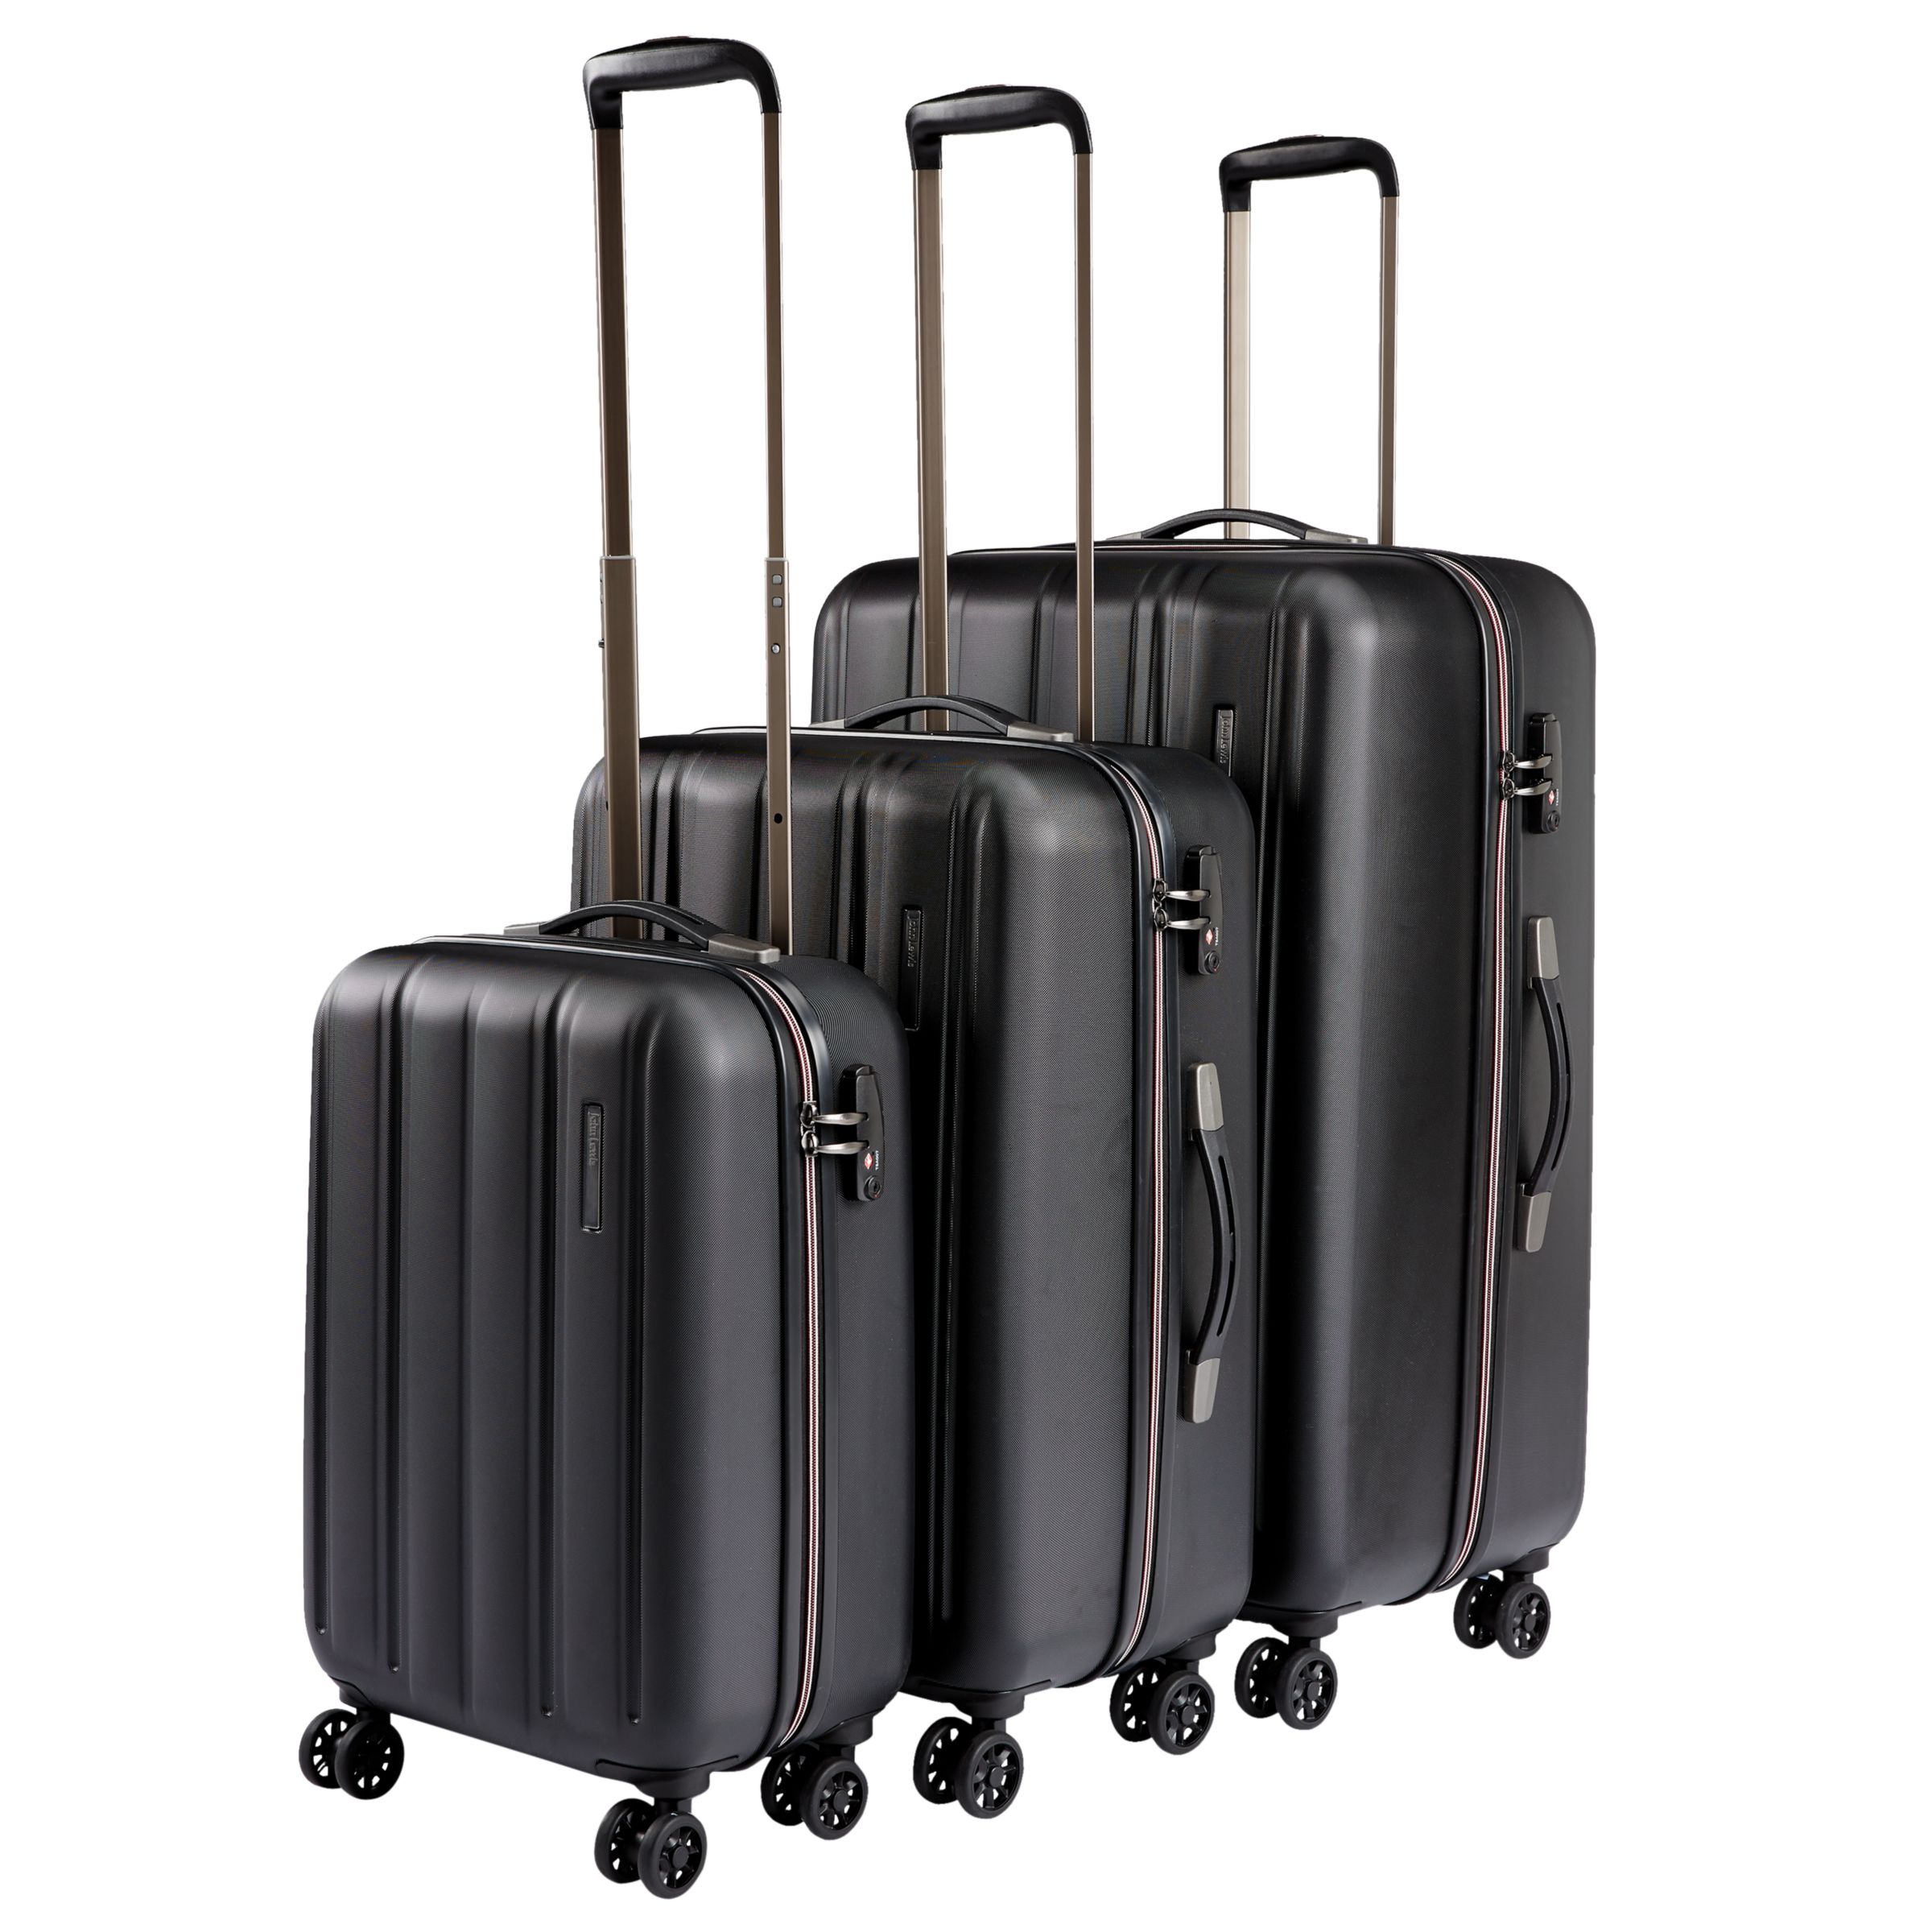 John Lewis & Partners Munich 4-Wheel Spinner 80cm Suitcase, Black at John Lewis & Partners